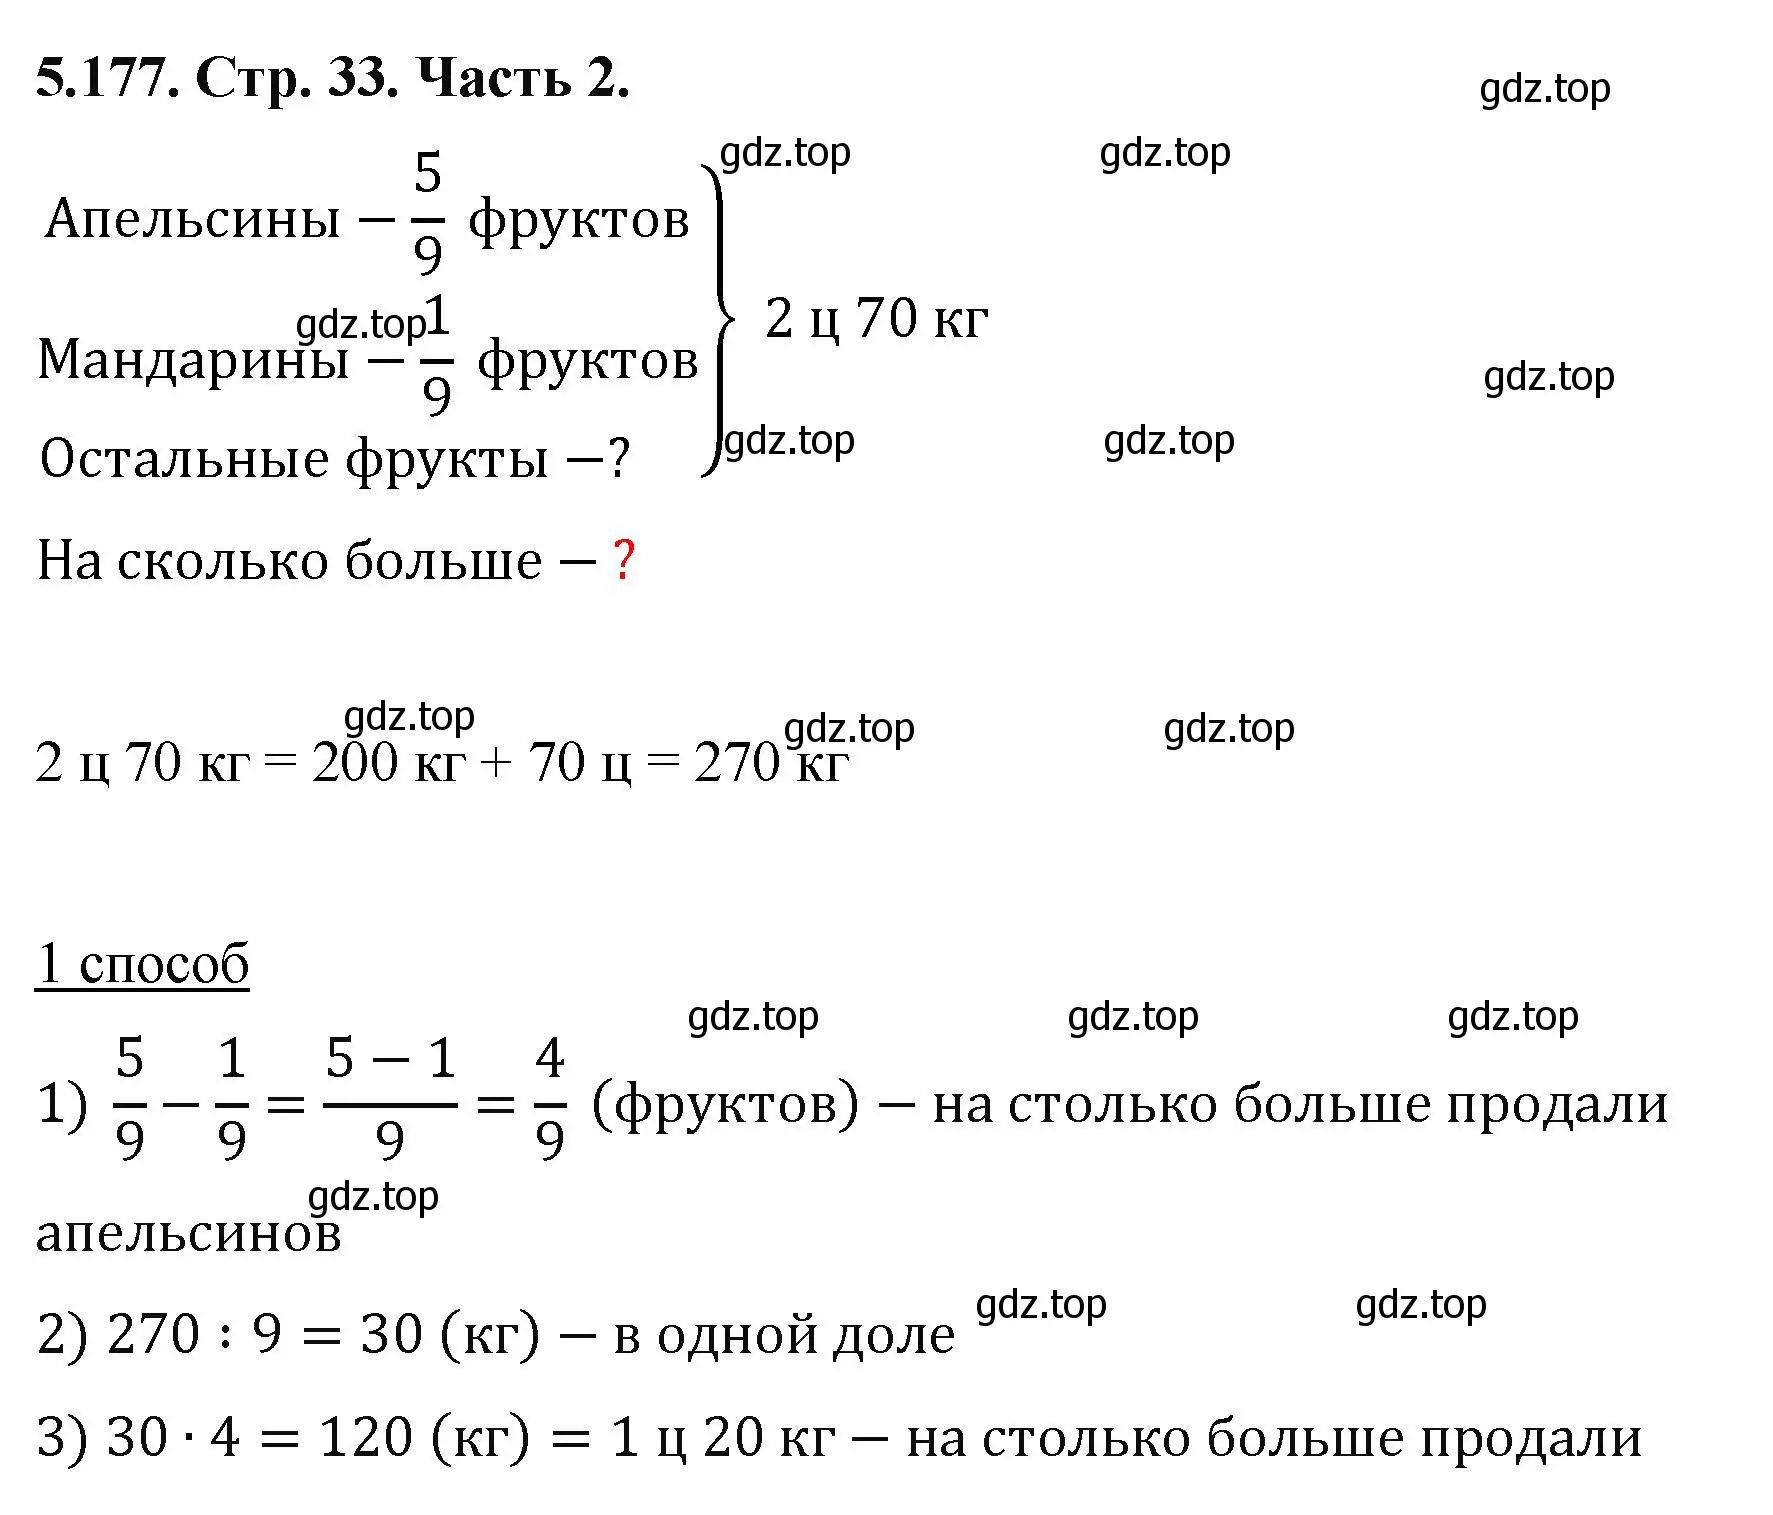 Решение номер 5.177 (страница 33) гдз по математике 5 класс Виленкин, Жохов, учебник 2 часть